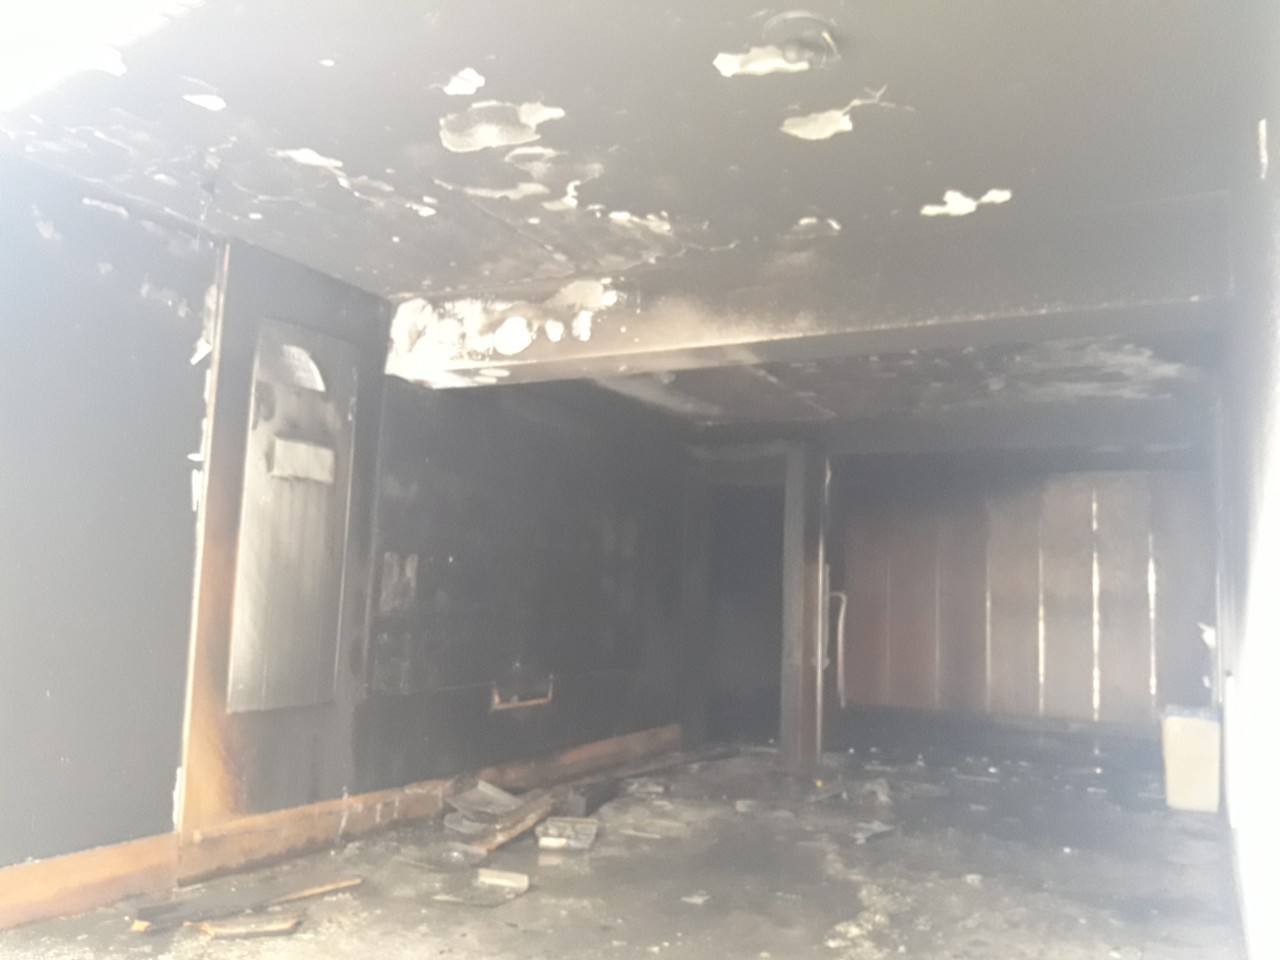 (Φώτο) Εκκενώθηκε πολυκατοικία στο κέντρο της Λάρνακας μετά από πυρκαγιά